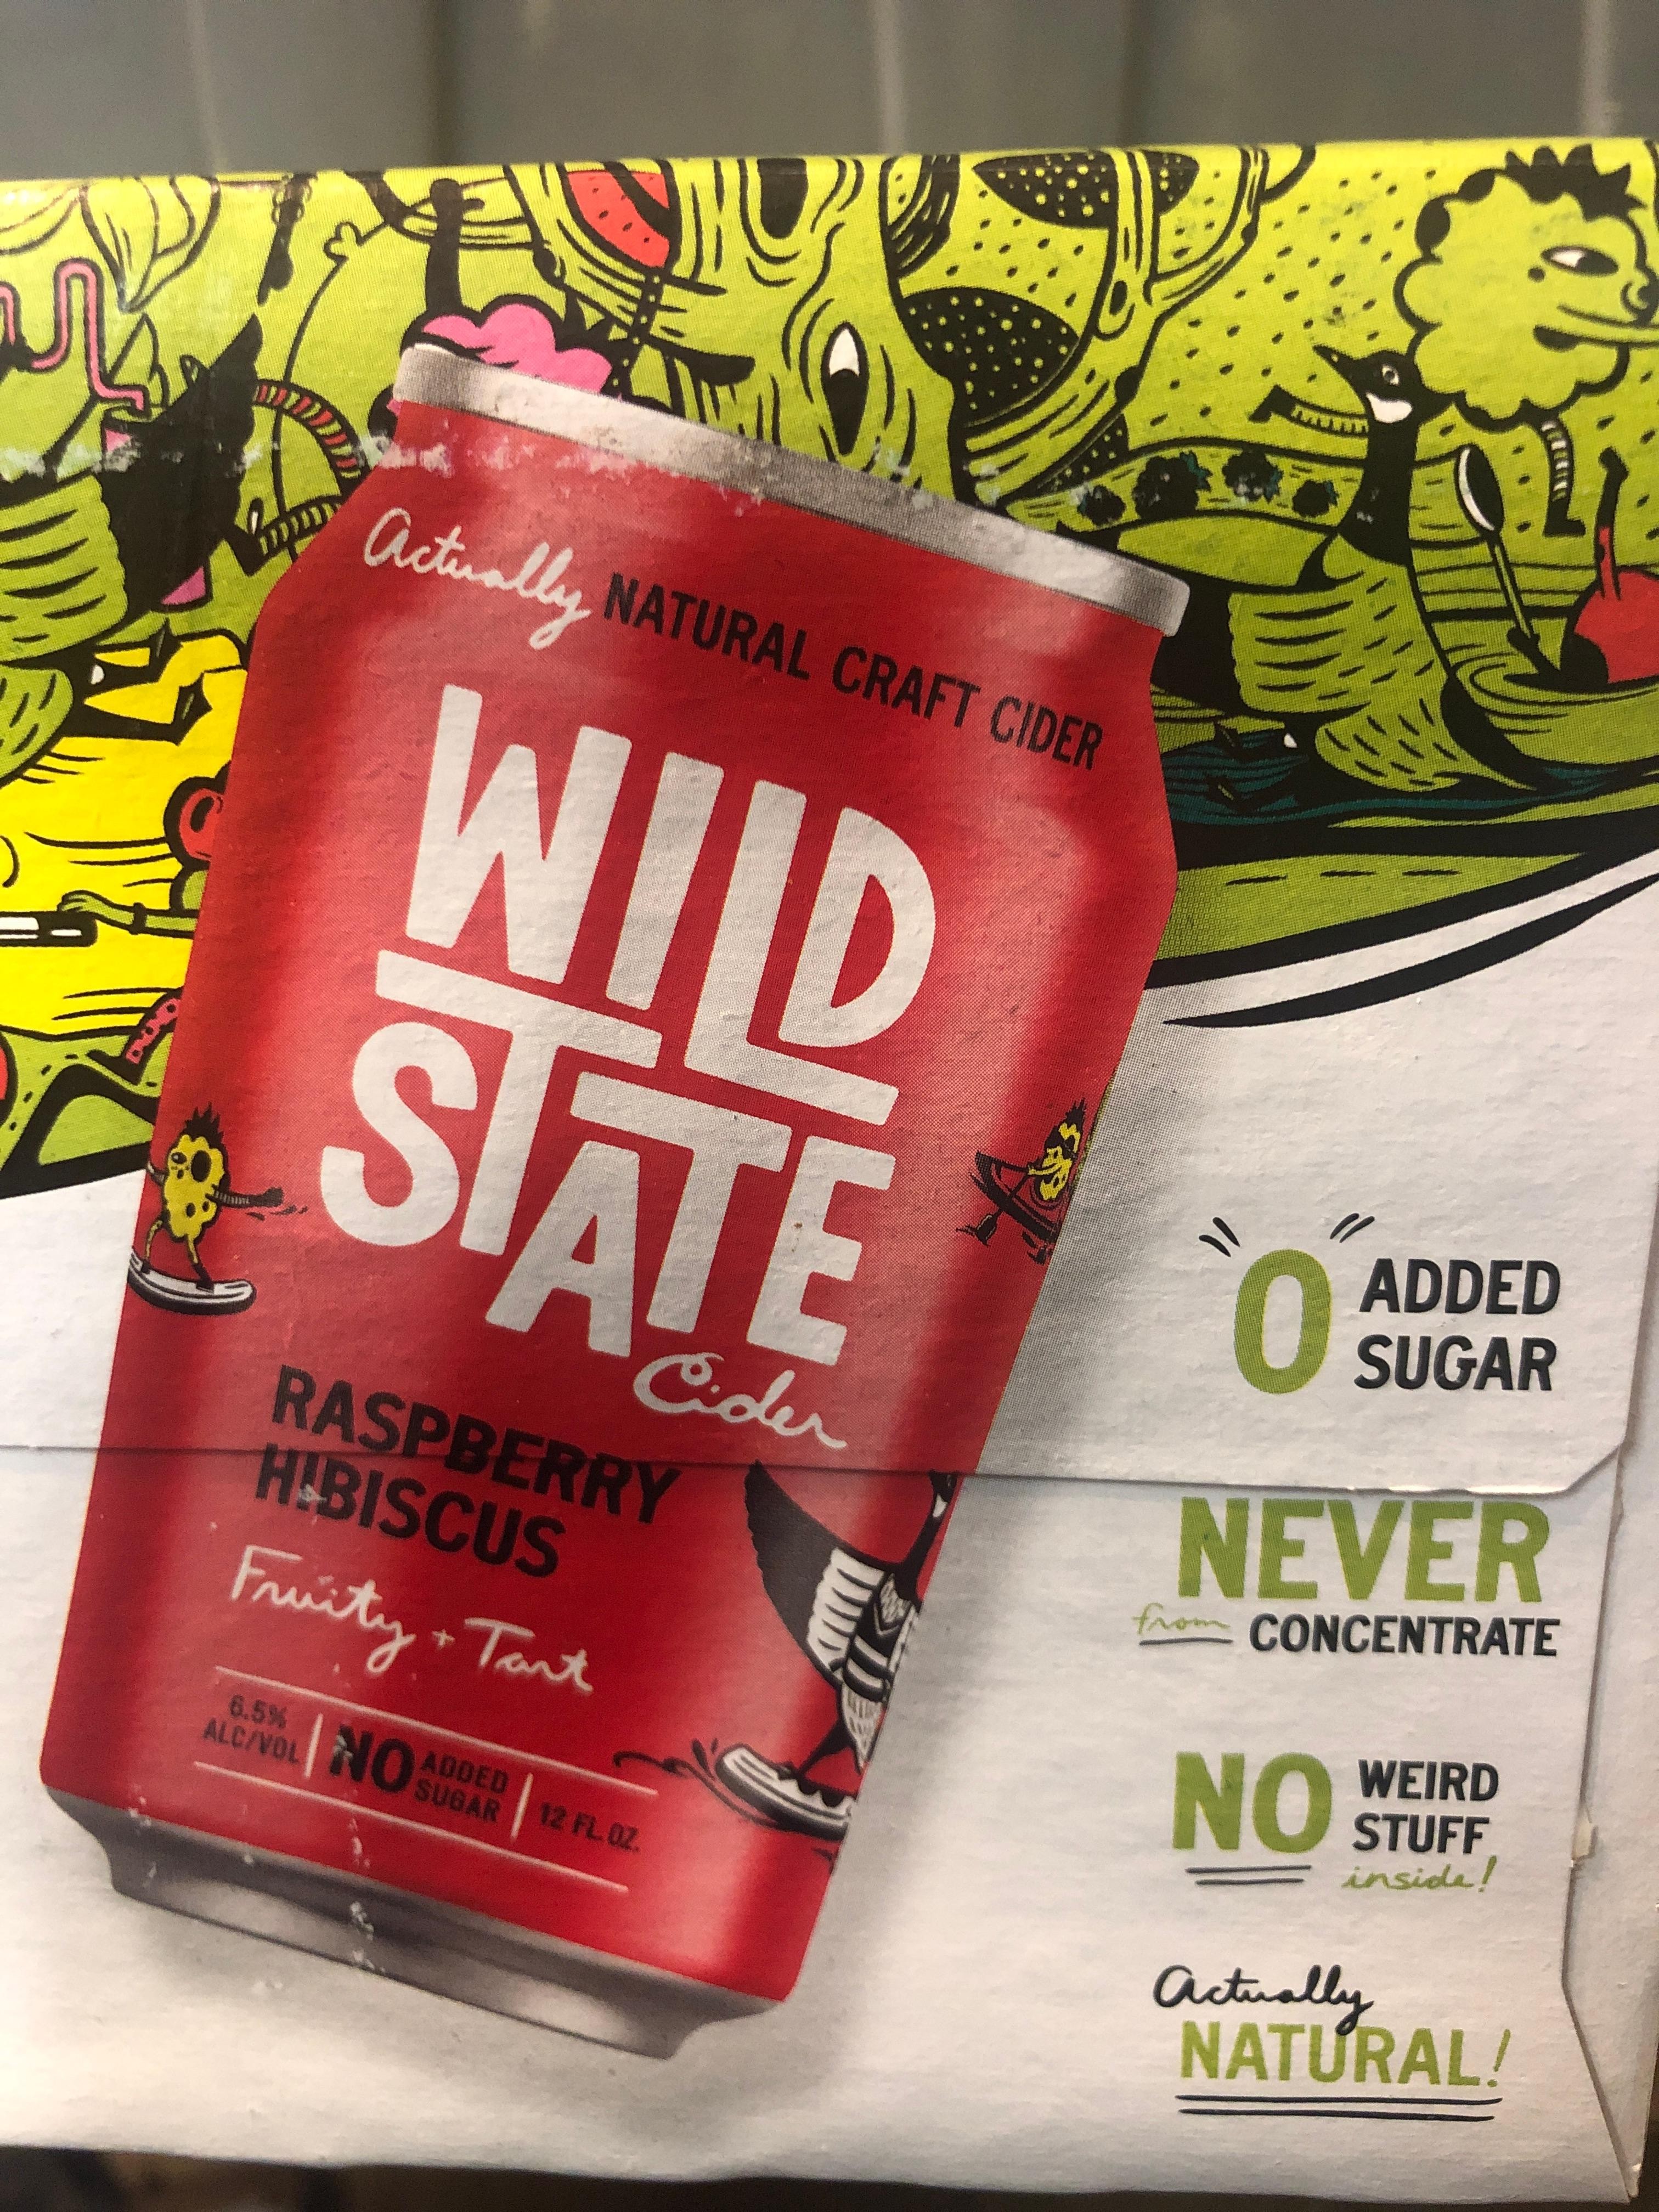 Wild State Cider